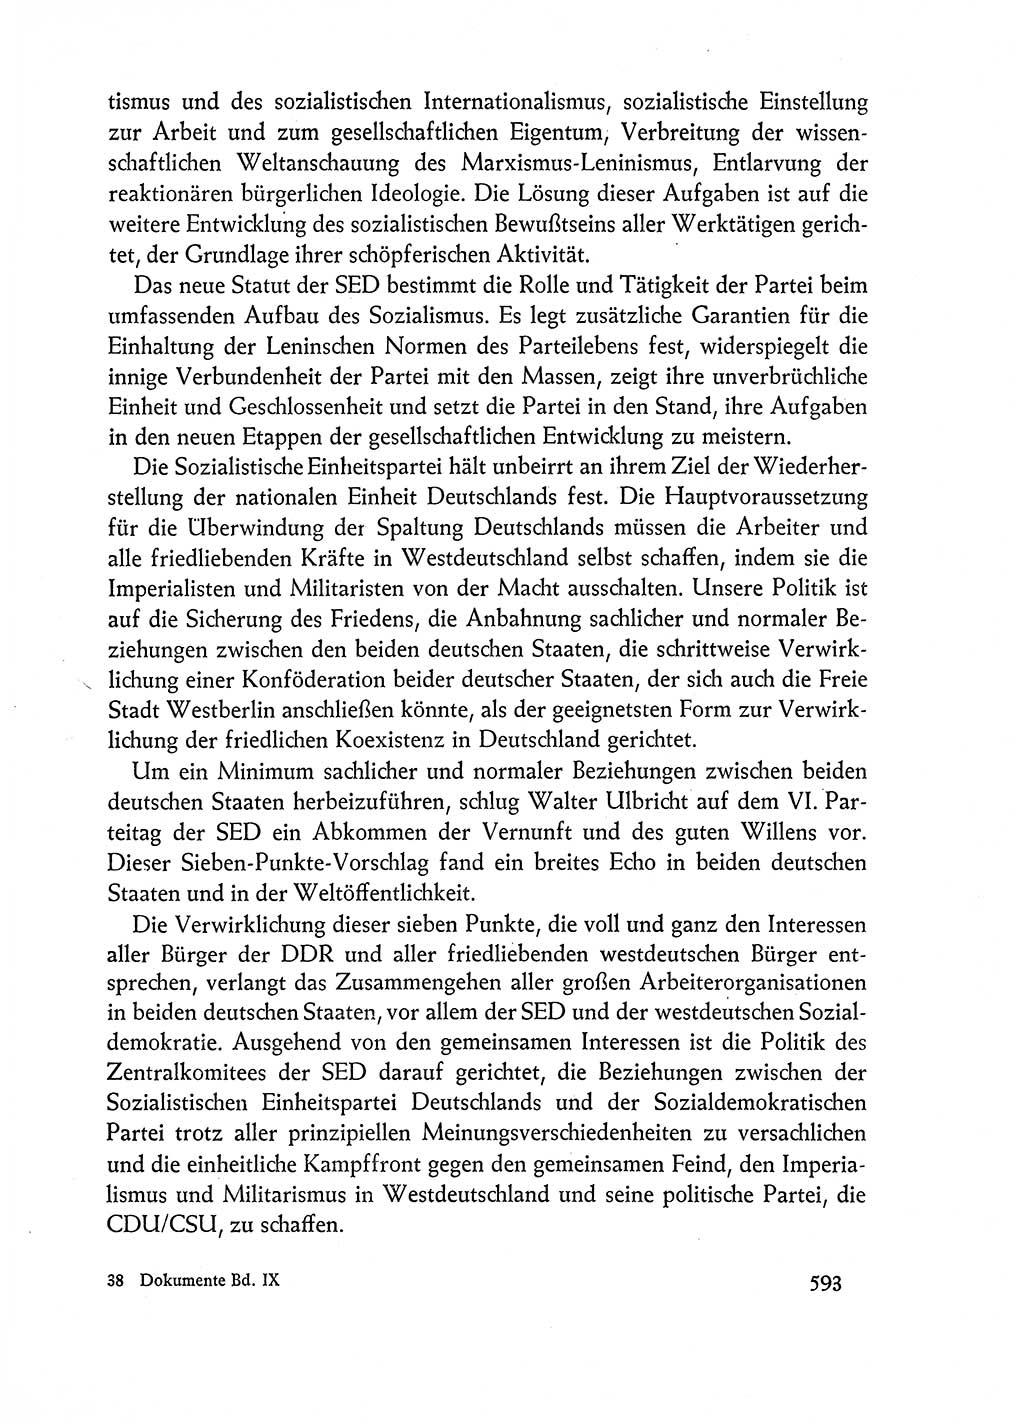 Dokumente der Sozialistischen Einheitspartei Deutschlands (SED) [Deutsche Demokratische Republik (DDR)] 1962-1963, Seite 593 (Dok. SED DDR 1962-1963, S. 593)